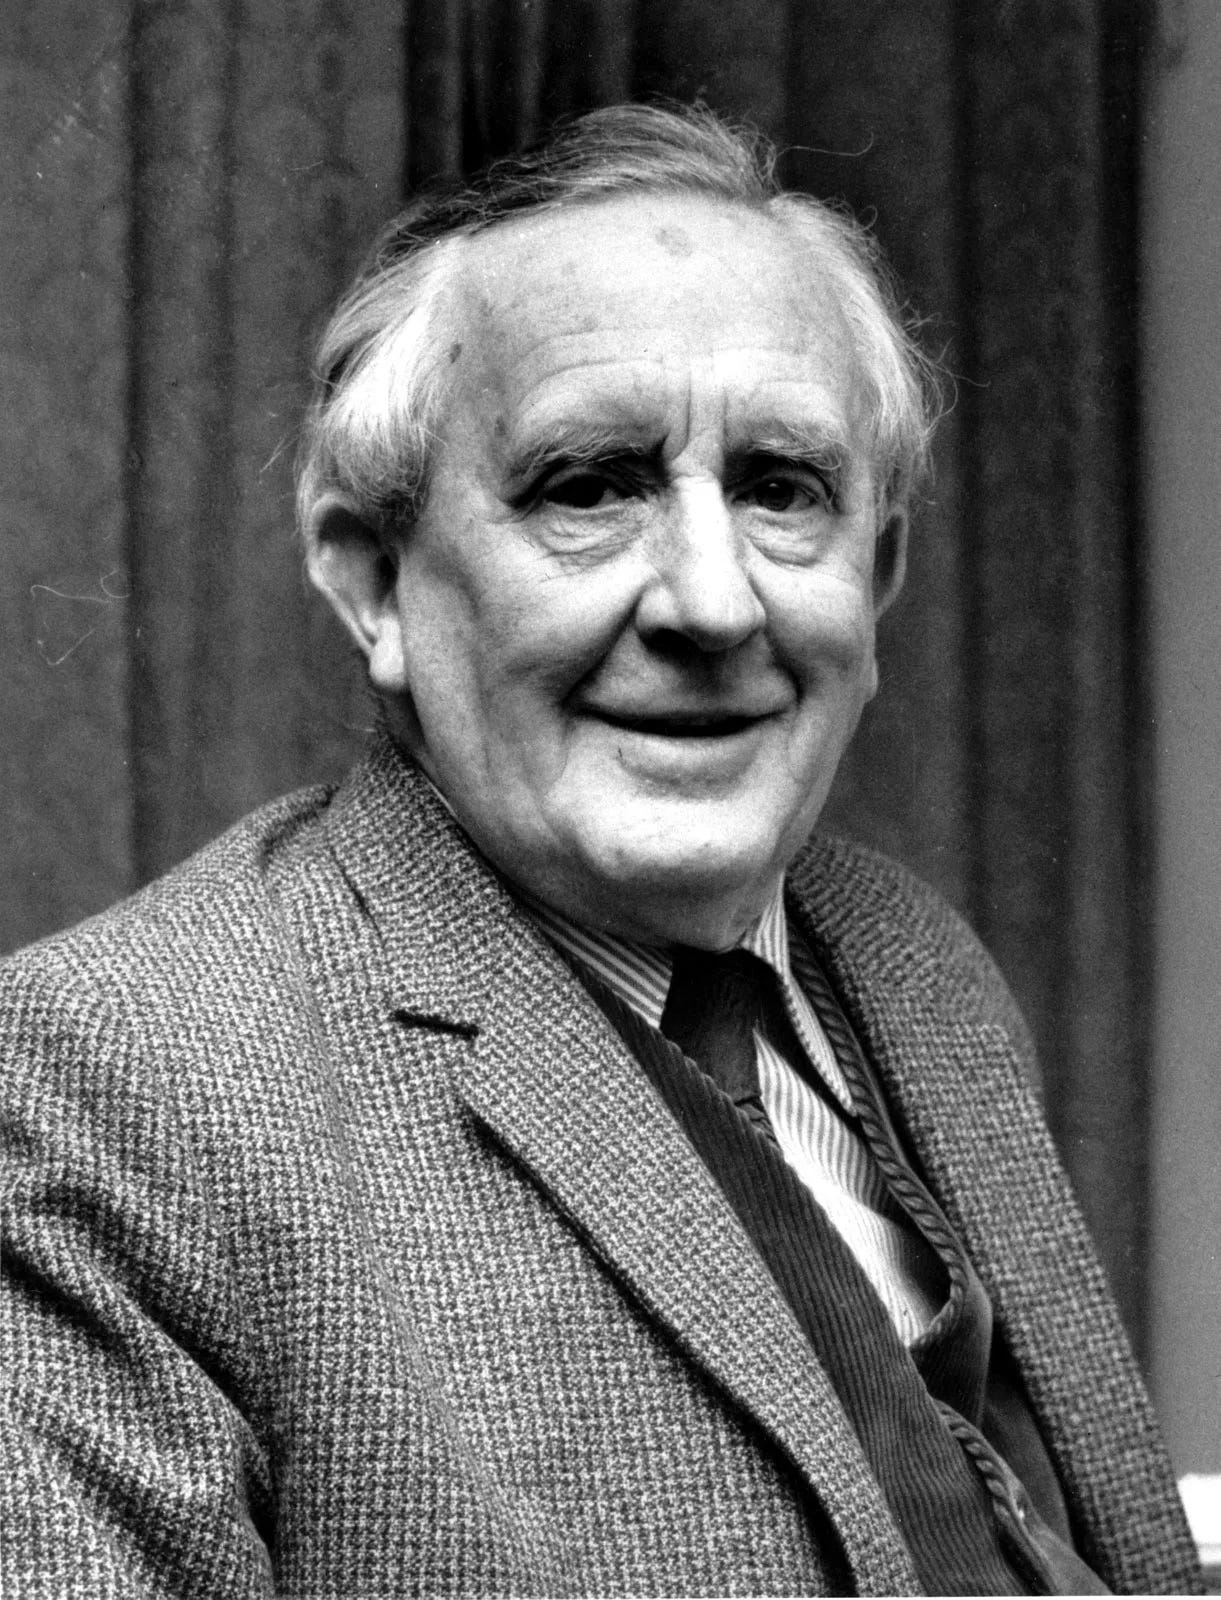 J.R.R. Tolkien's 